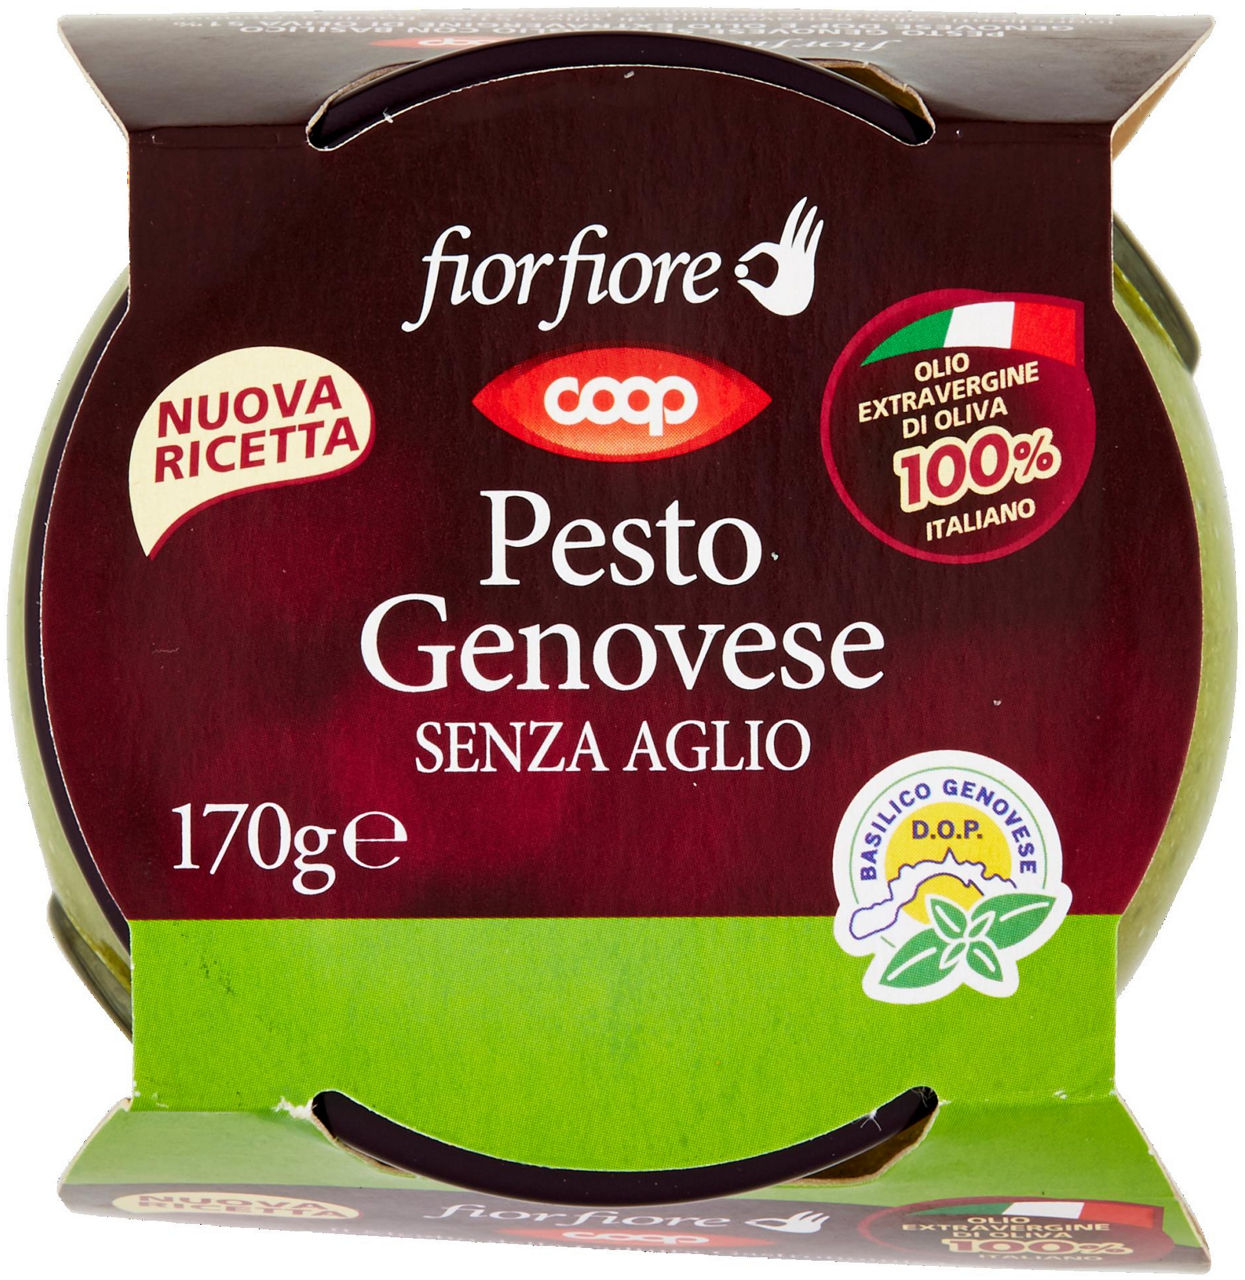 PESTO GENOVESE FIOR FIORE COOP SENZA AGLIO VASETTO VETRO G 170 - 4